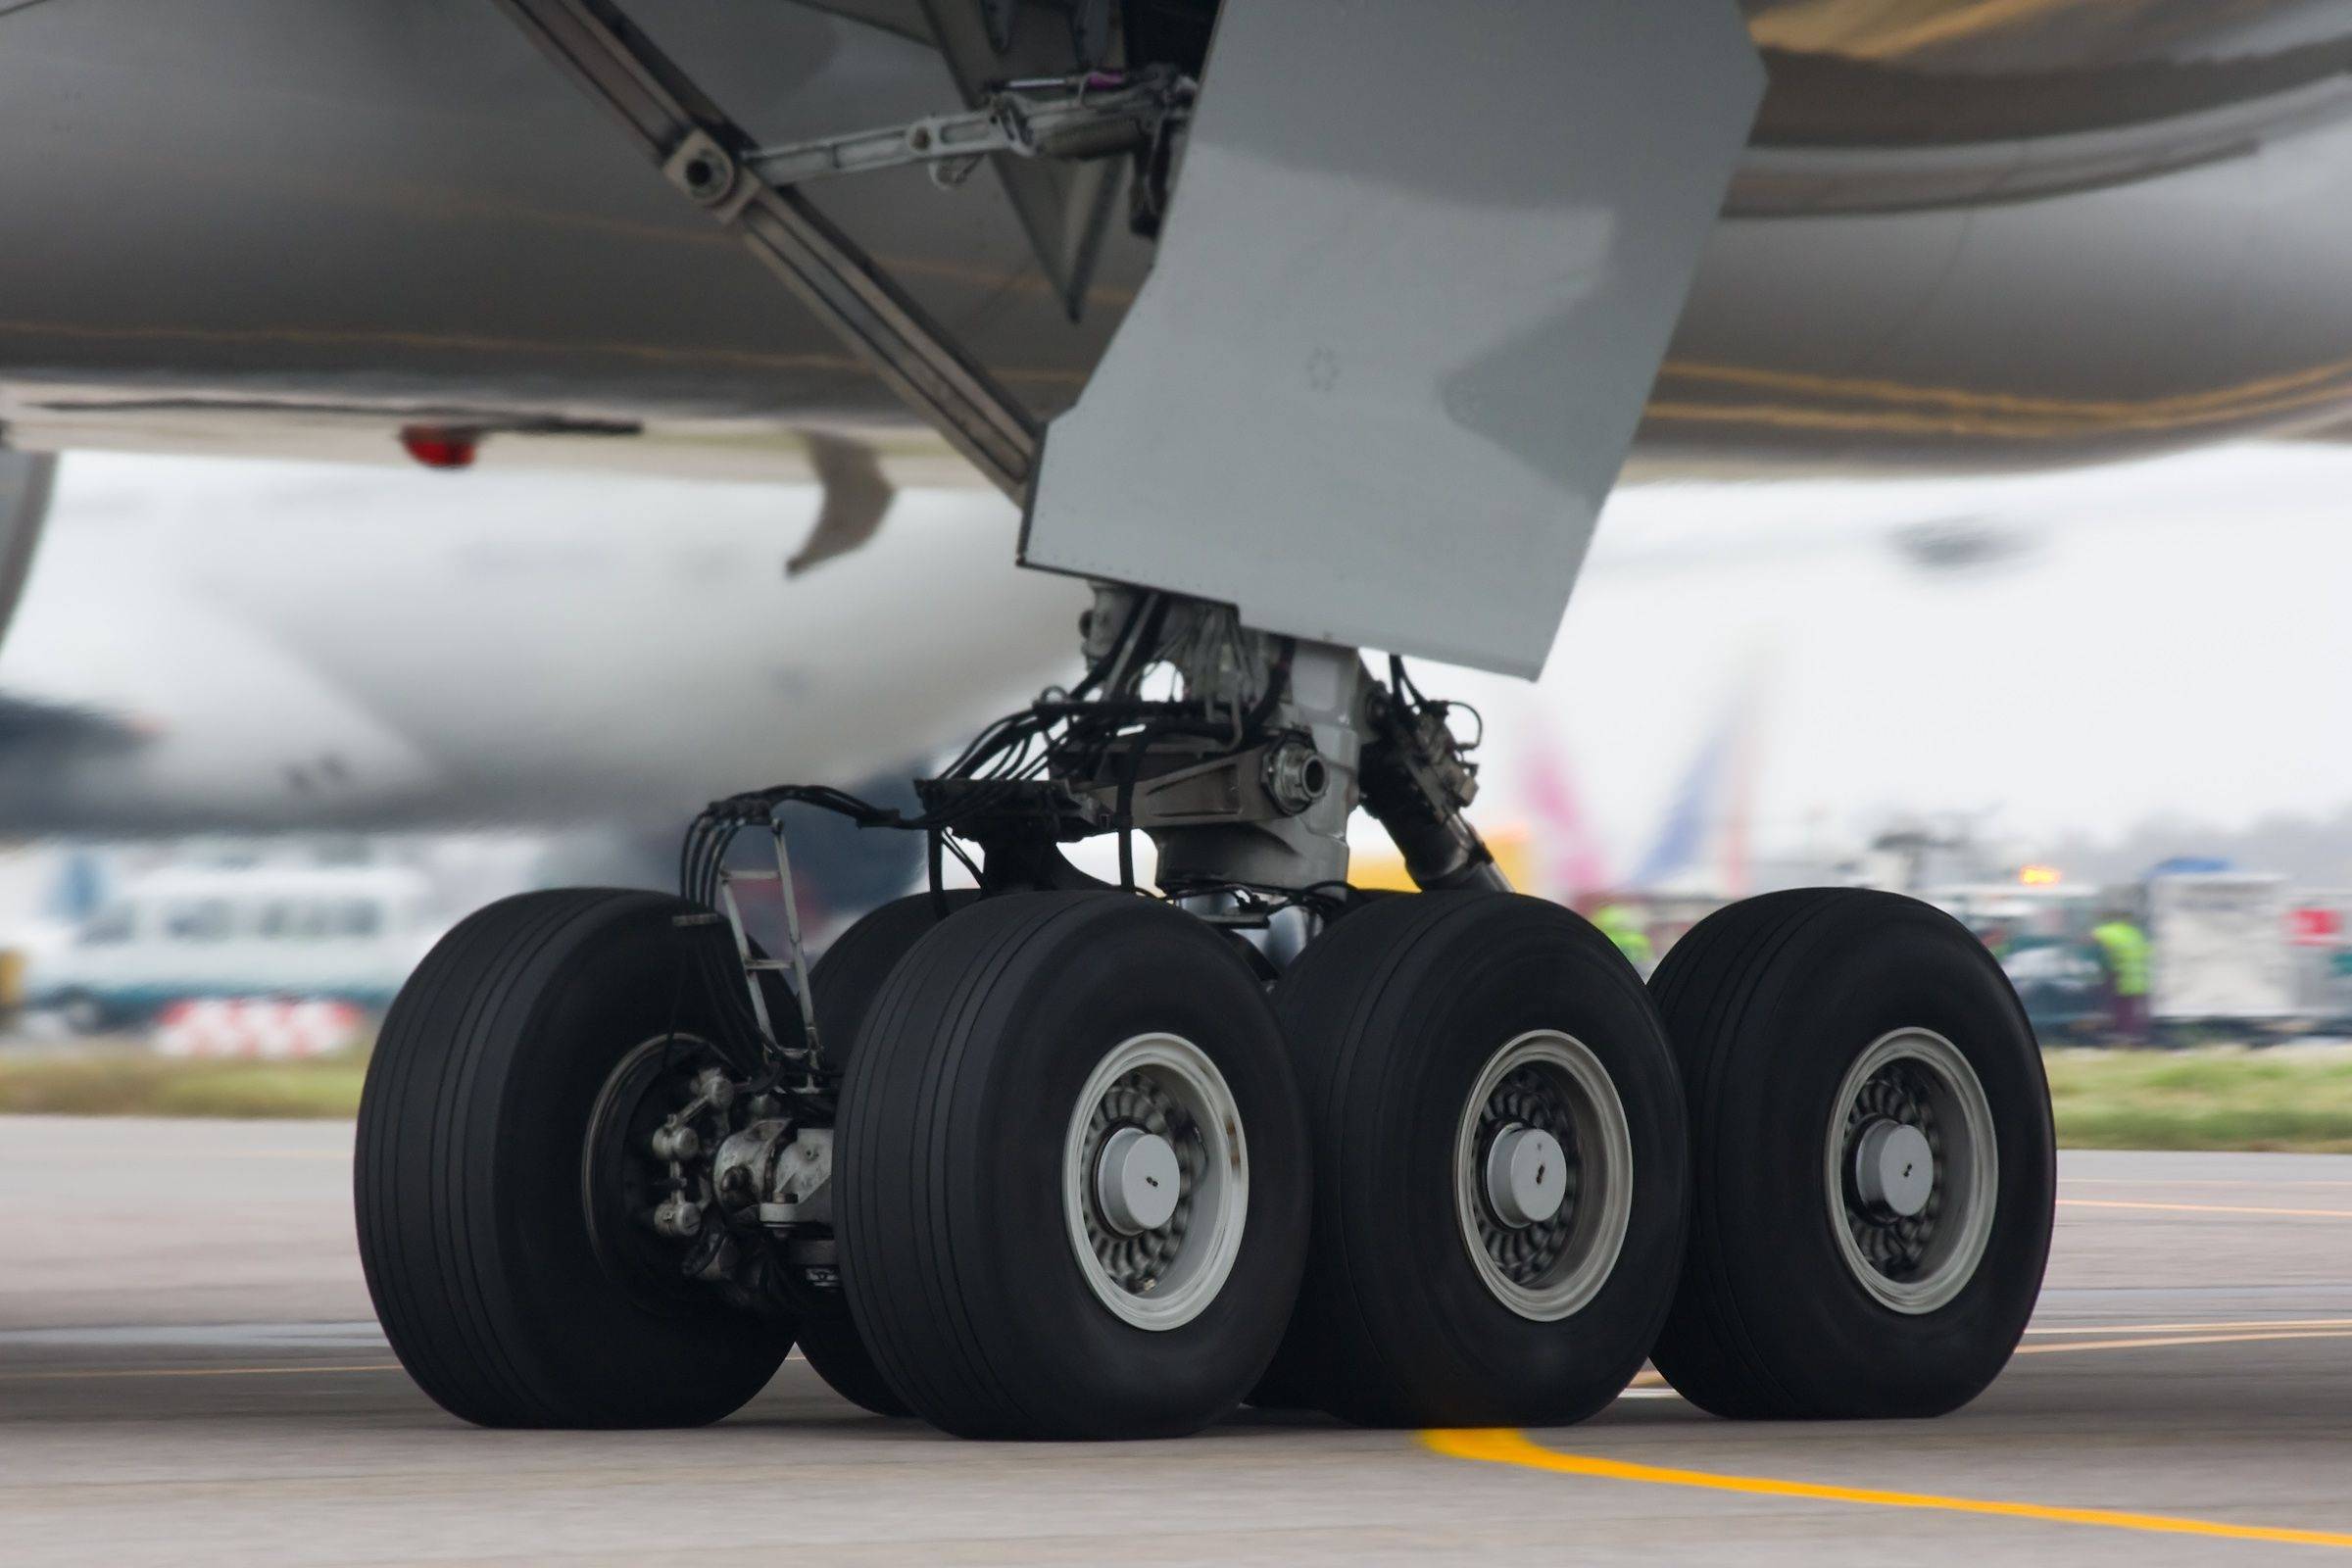 飞机轮胎的胎压是家用轿车的6倍却很少爆胎这是为什么